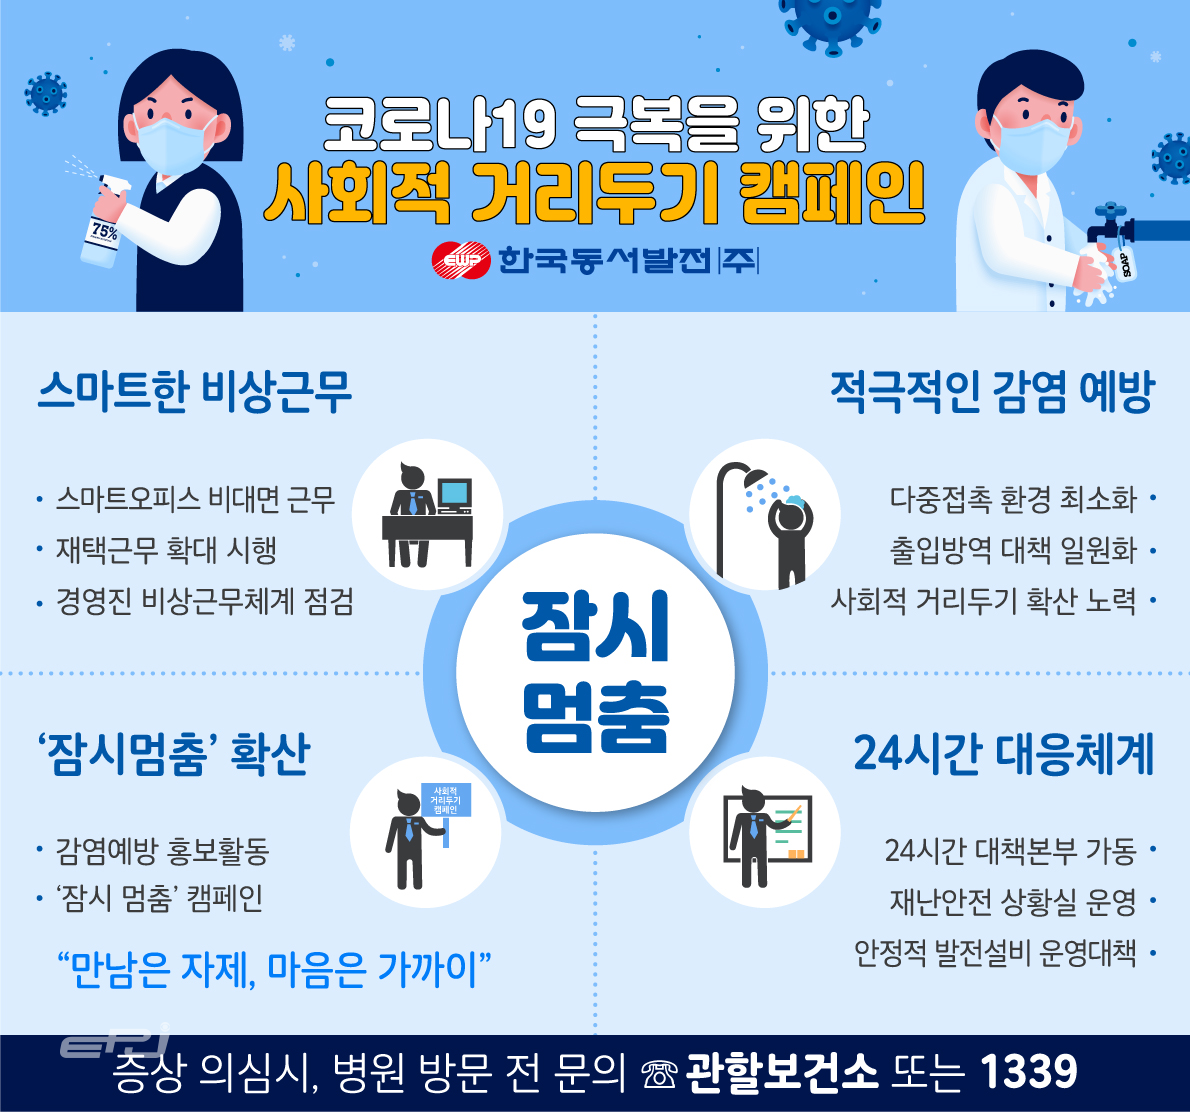 한국동서발전의 코로나19 극복을 위한 사회적 거리두기 캠페인 수칙